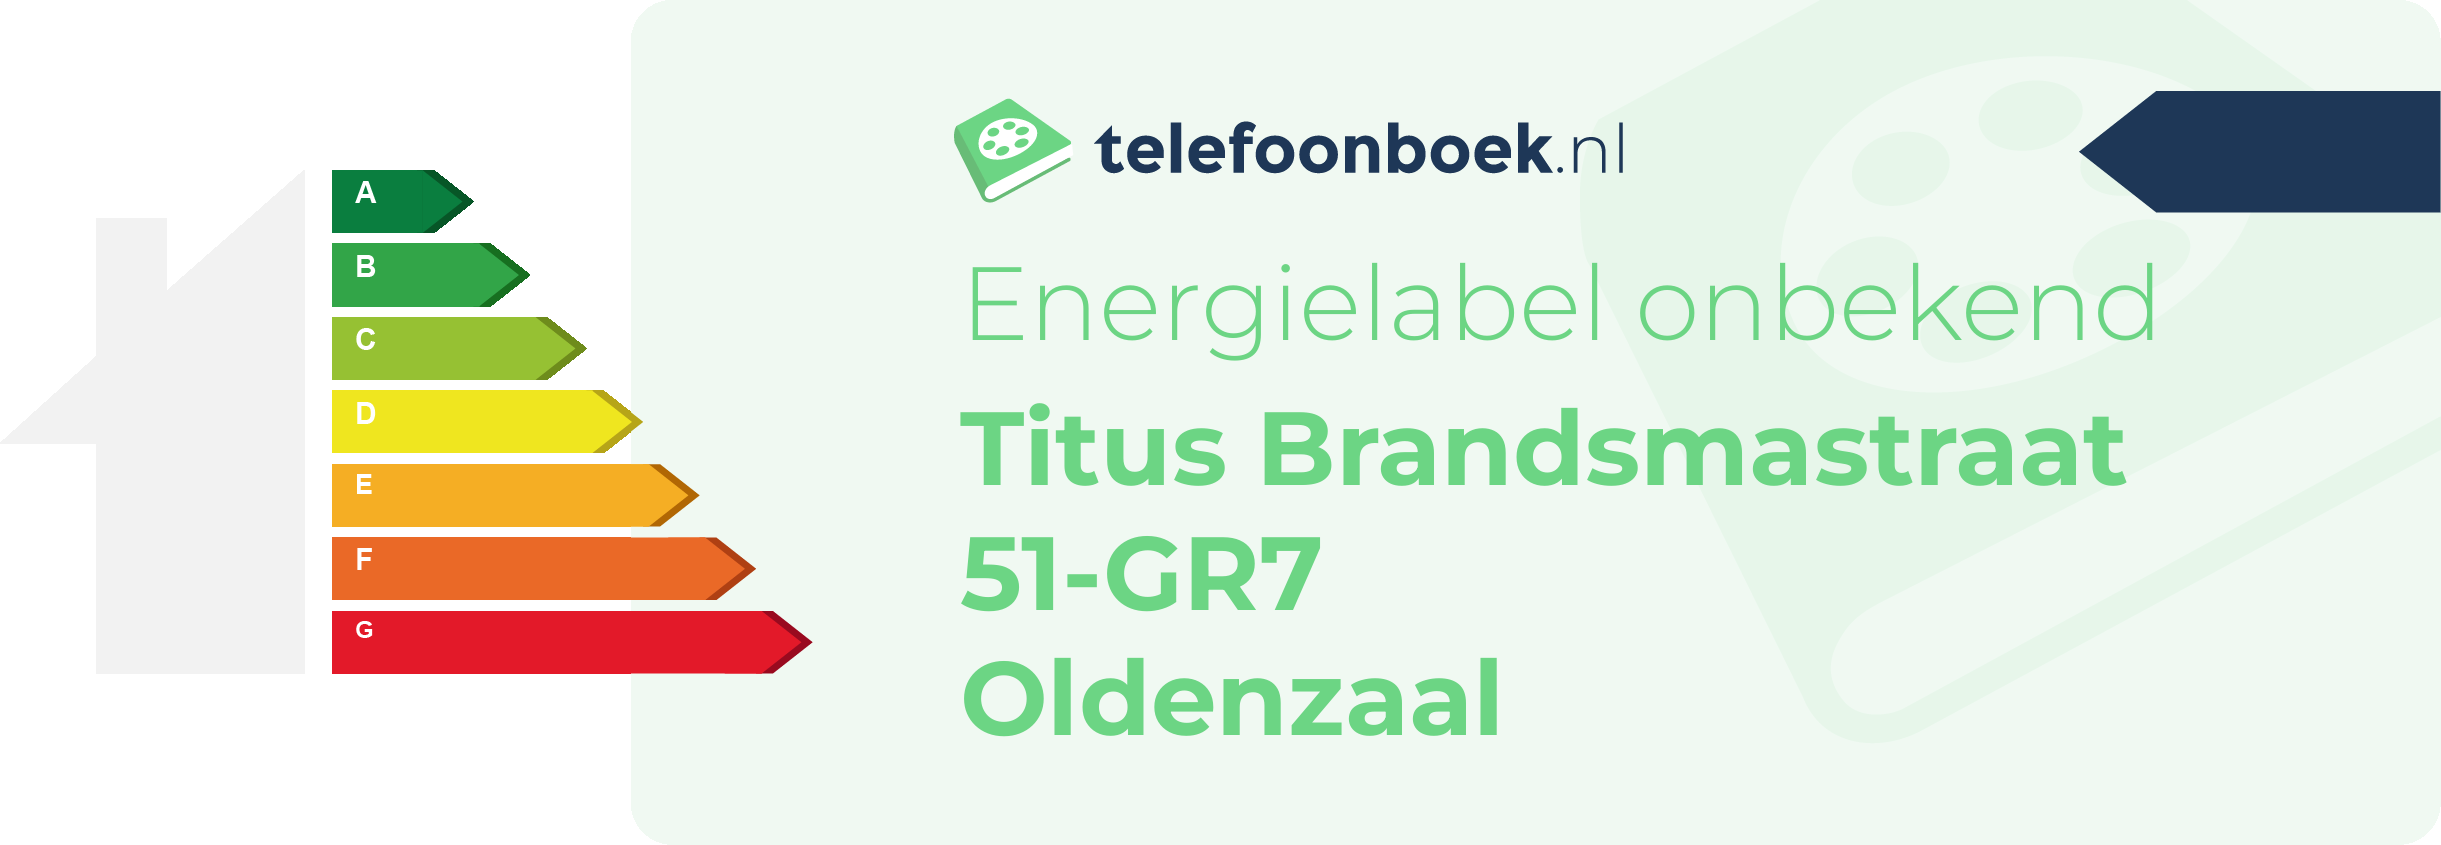 Energielabel Titus Brandsmastraat 51-GR7 Oldenzaal